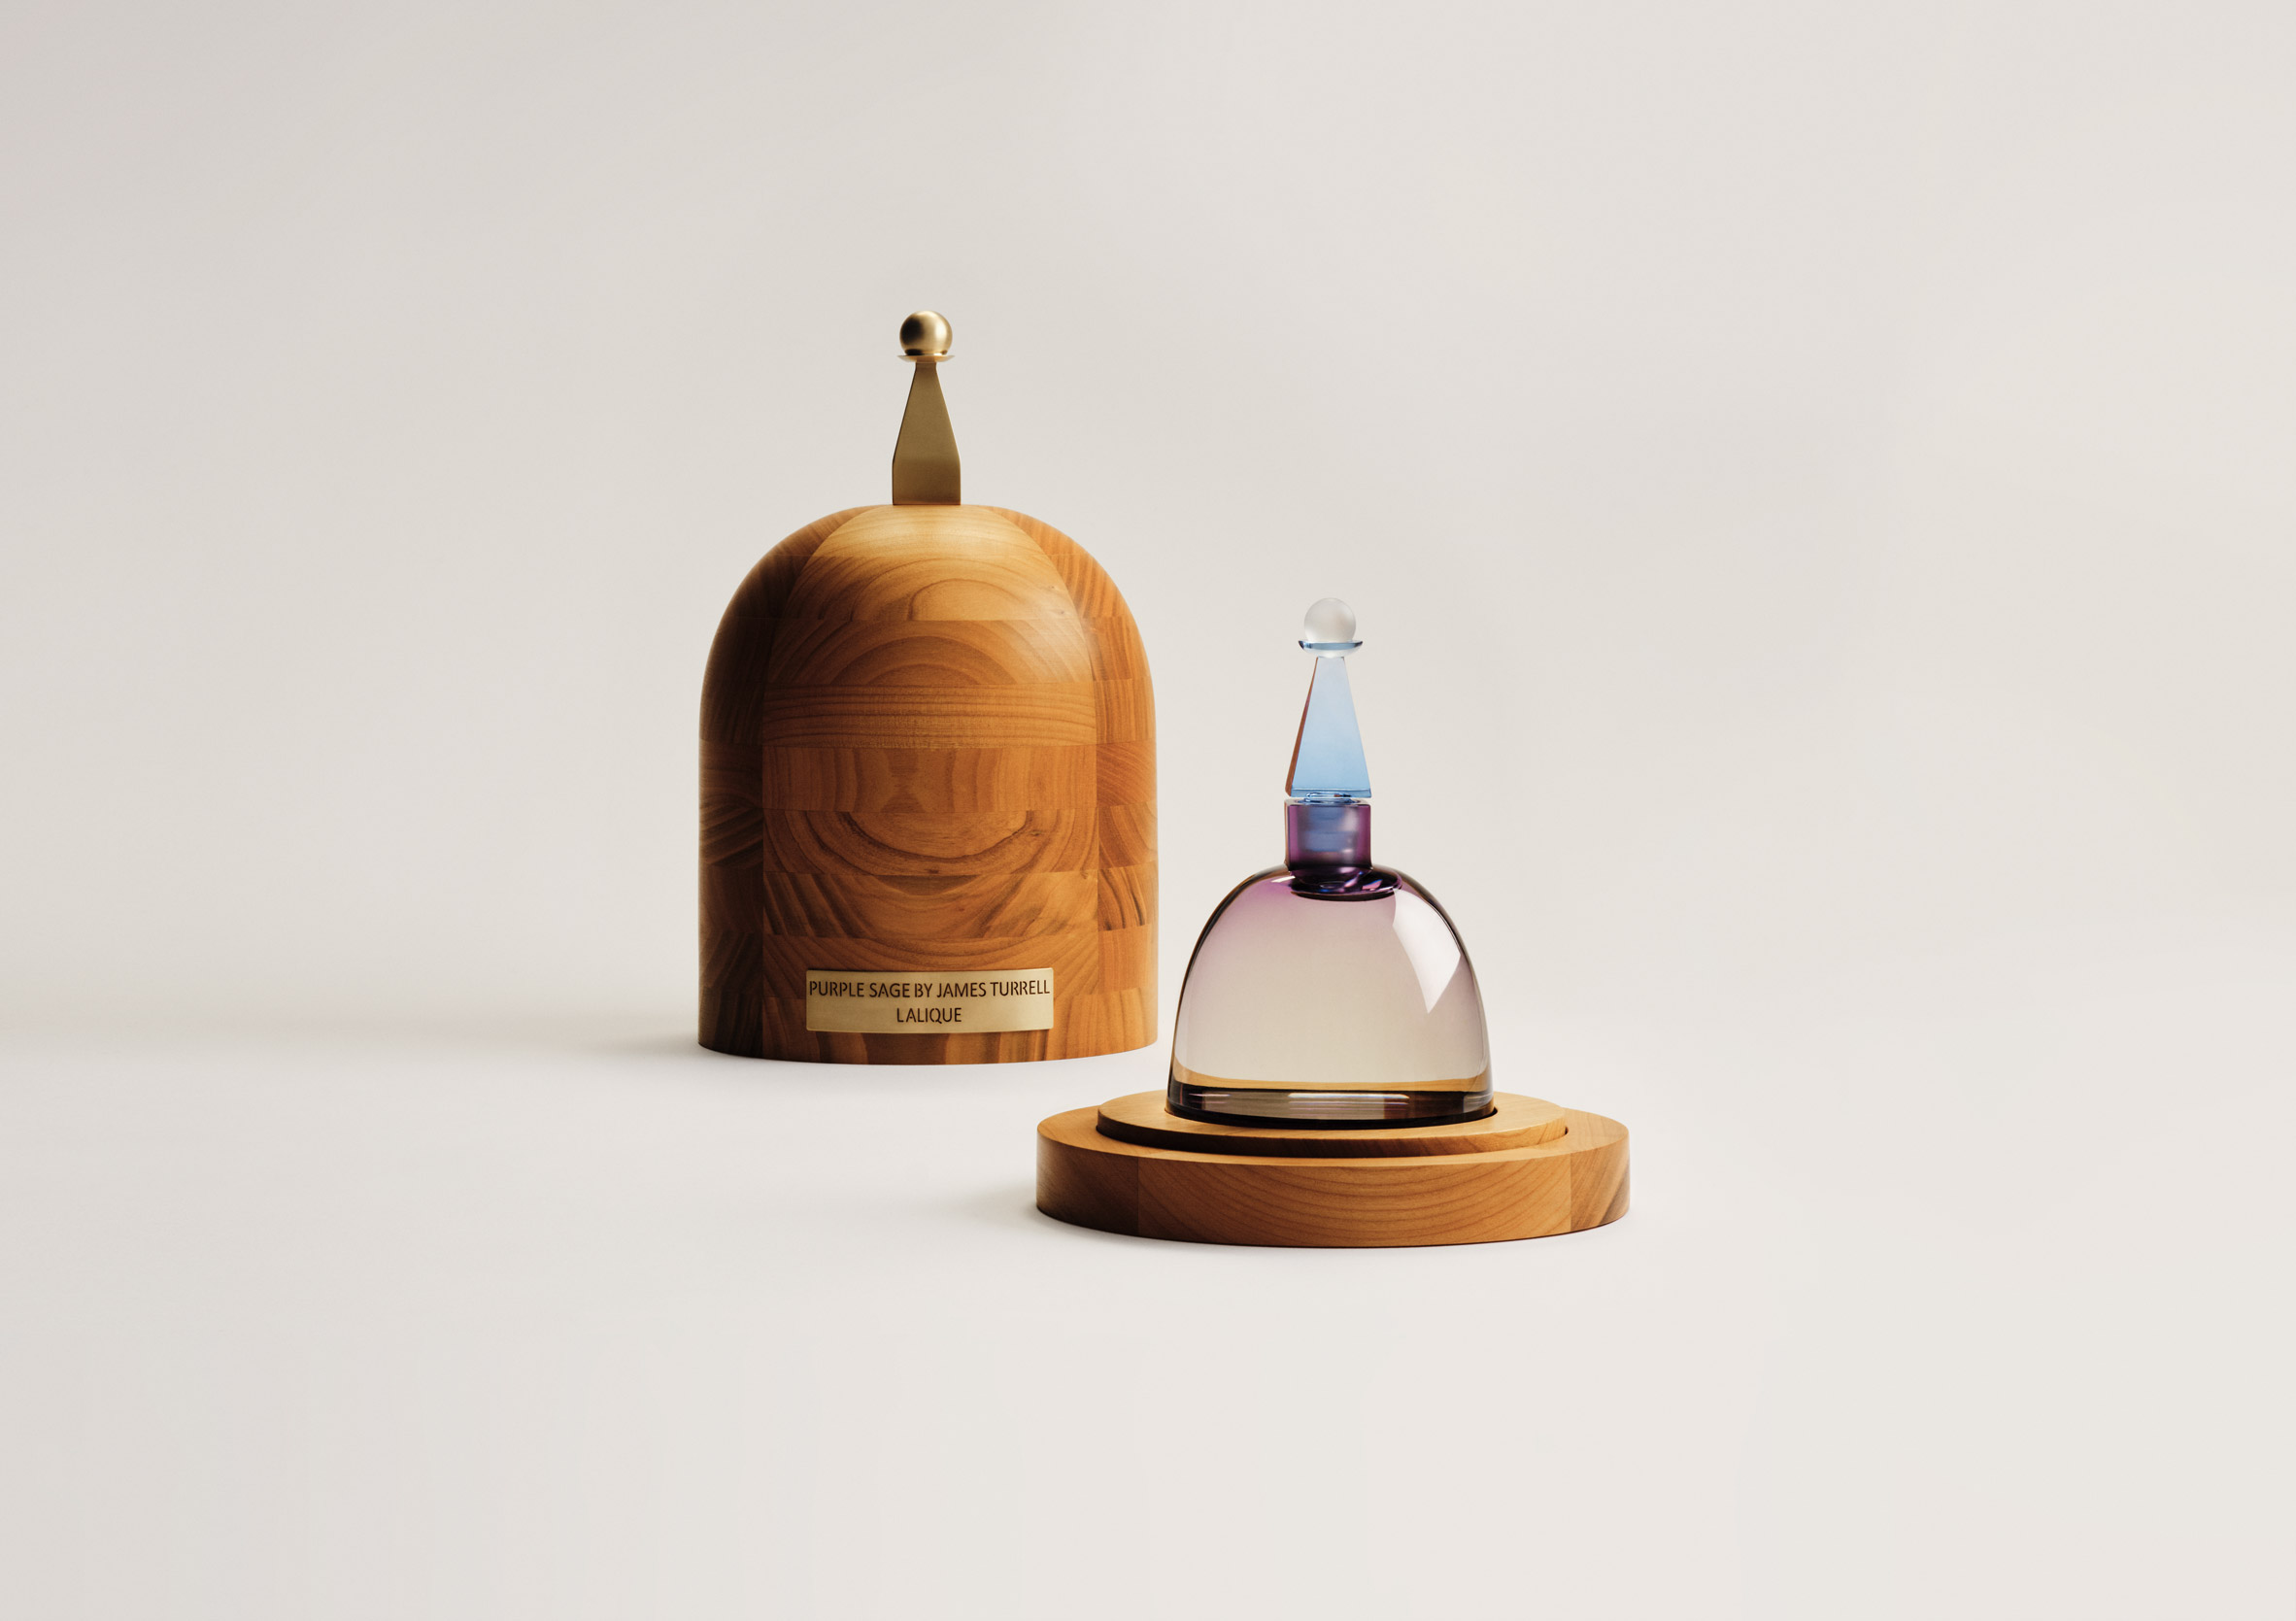 How this Legendary Designer Created our New Fragrance Bottles – Glasshouse  Fragrances Australia